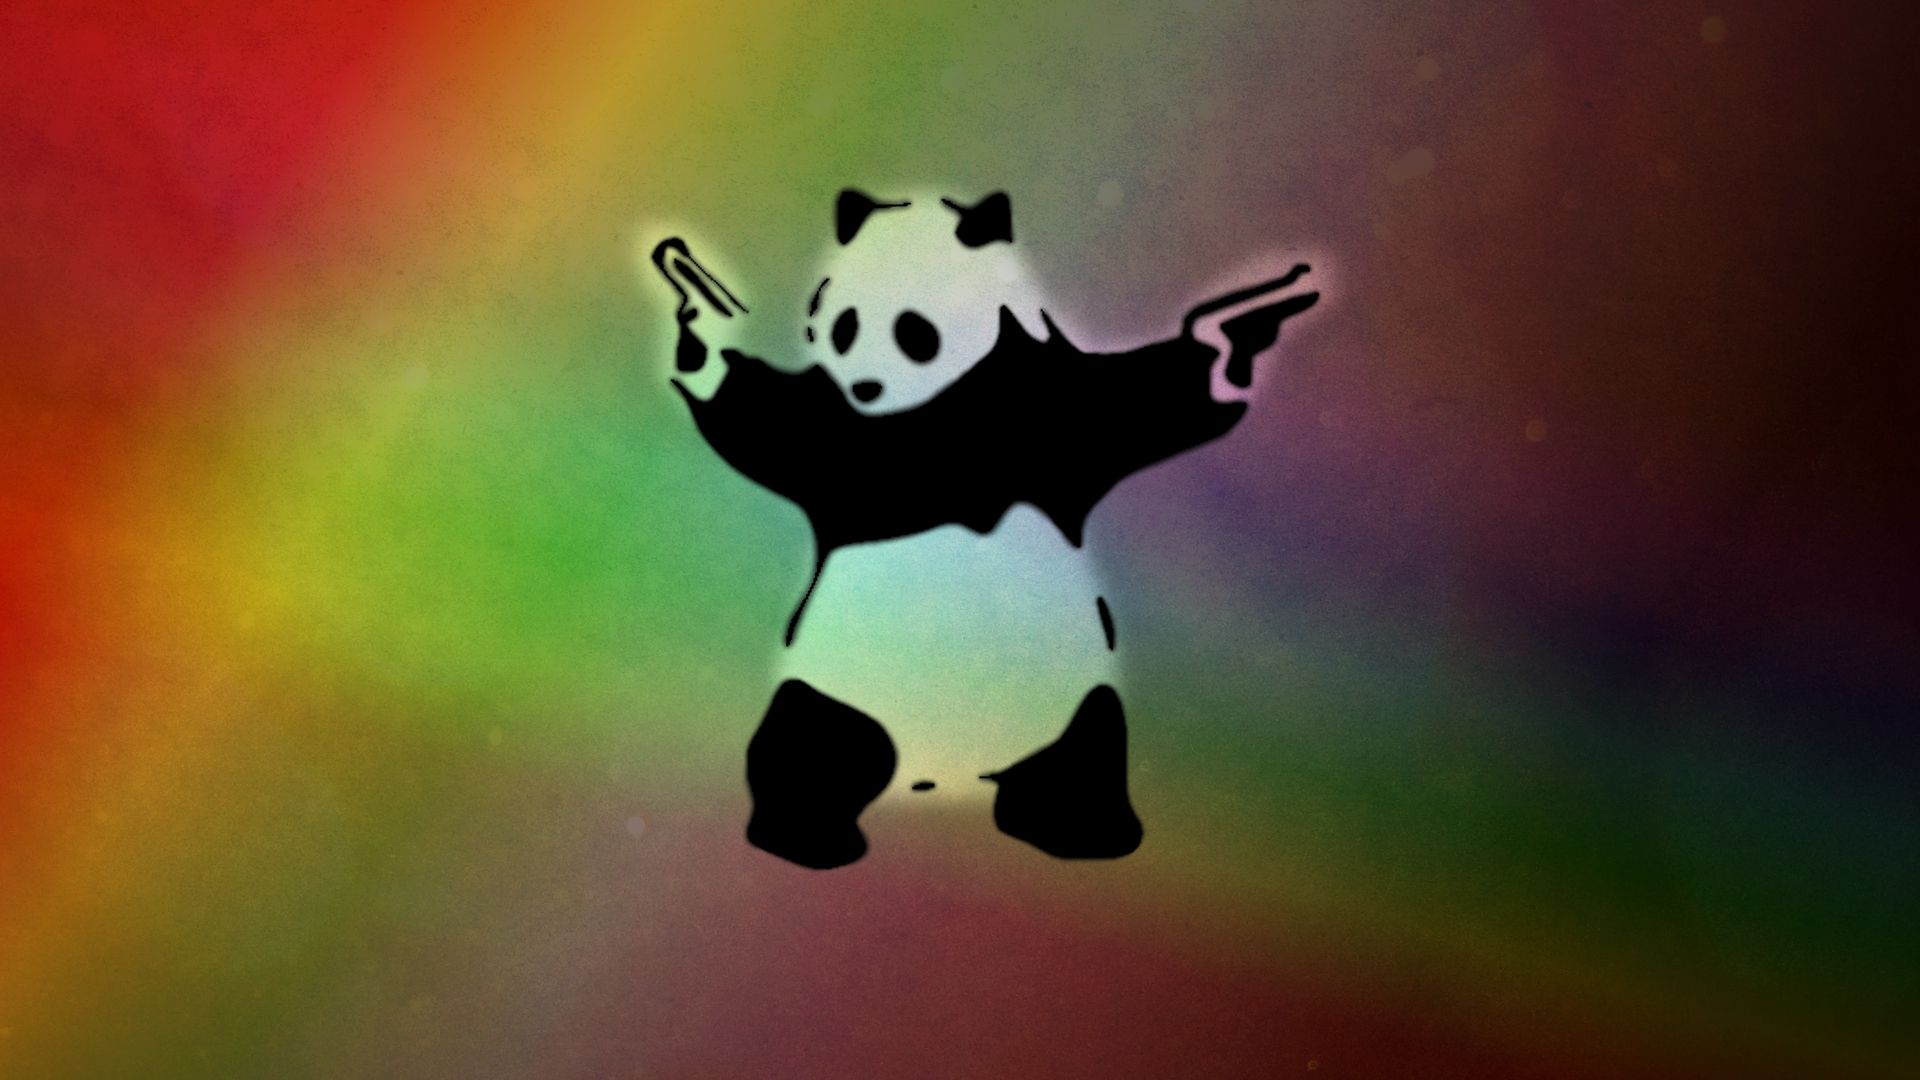 rainbow panda anime